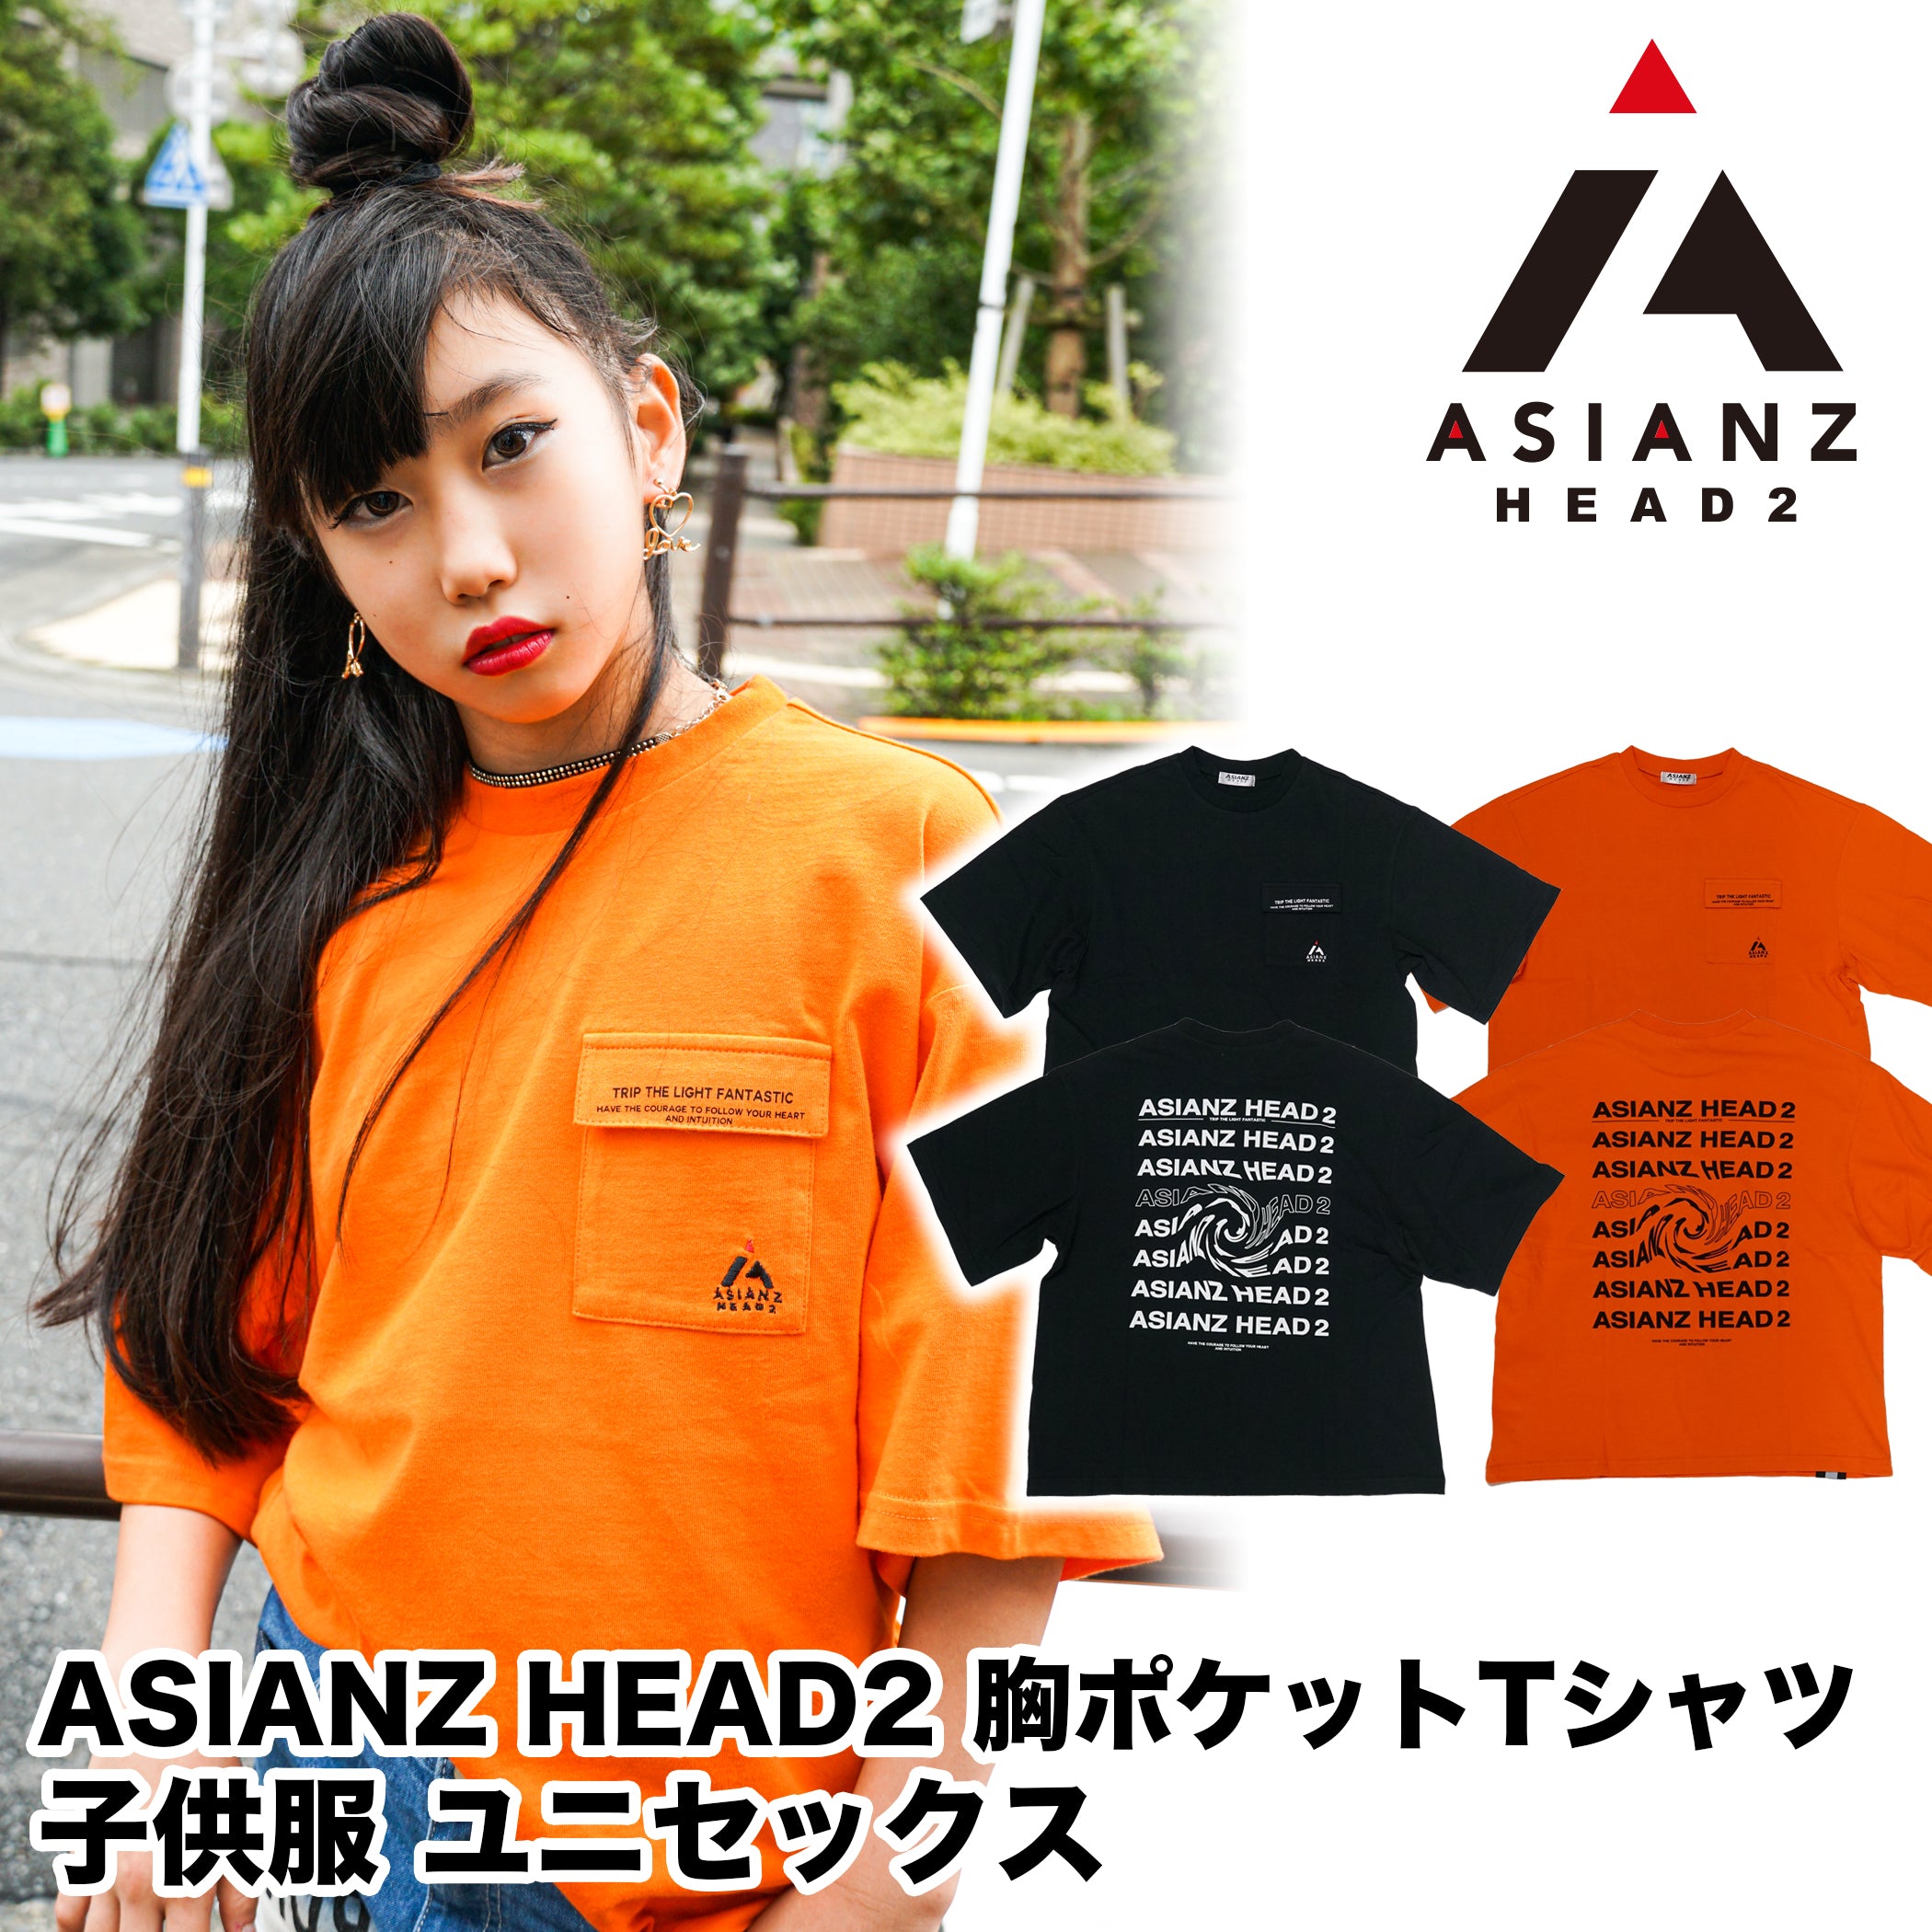 (40%オフ! セール商品) ASIANZ HEAD2 胸ポケットTシャツ キッズ 